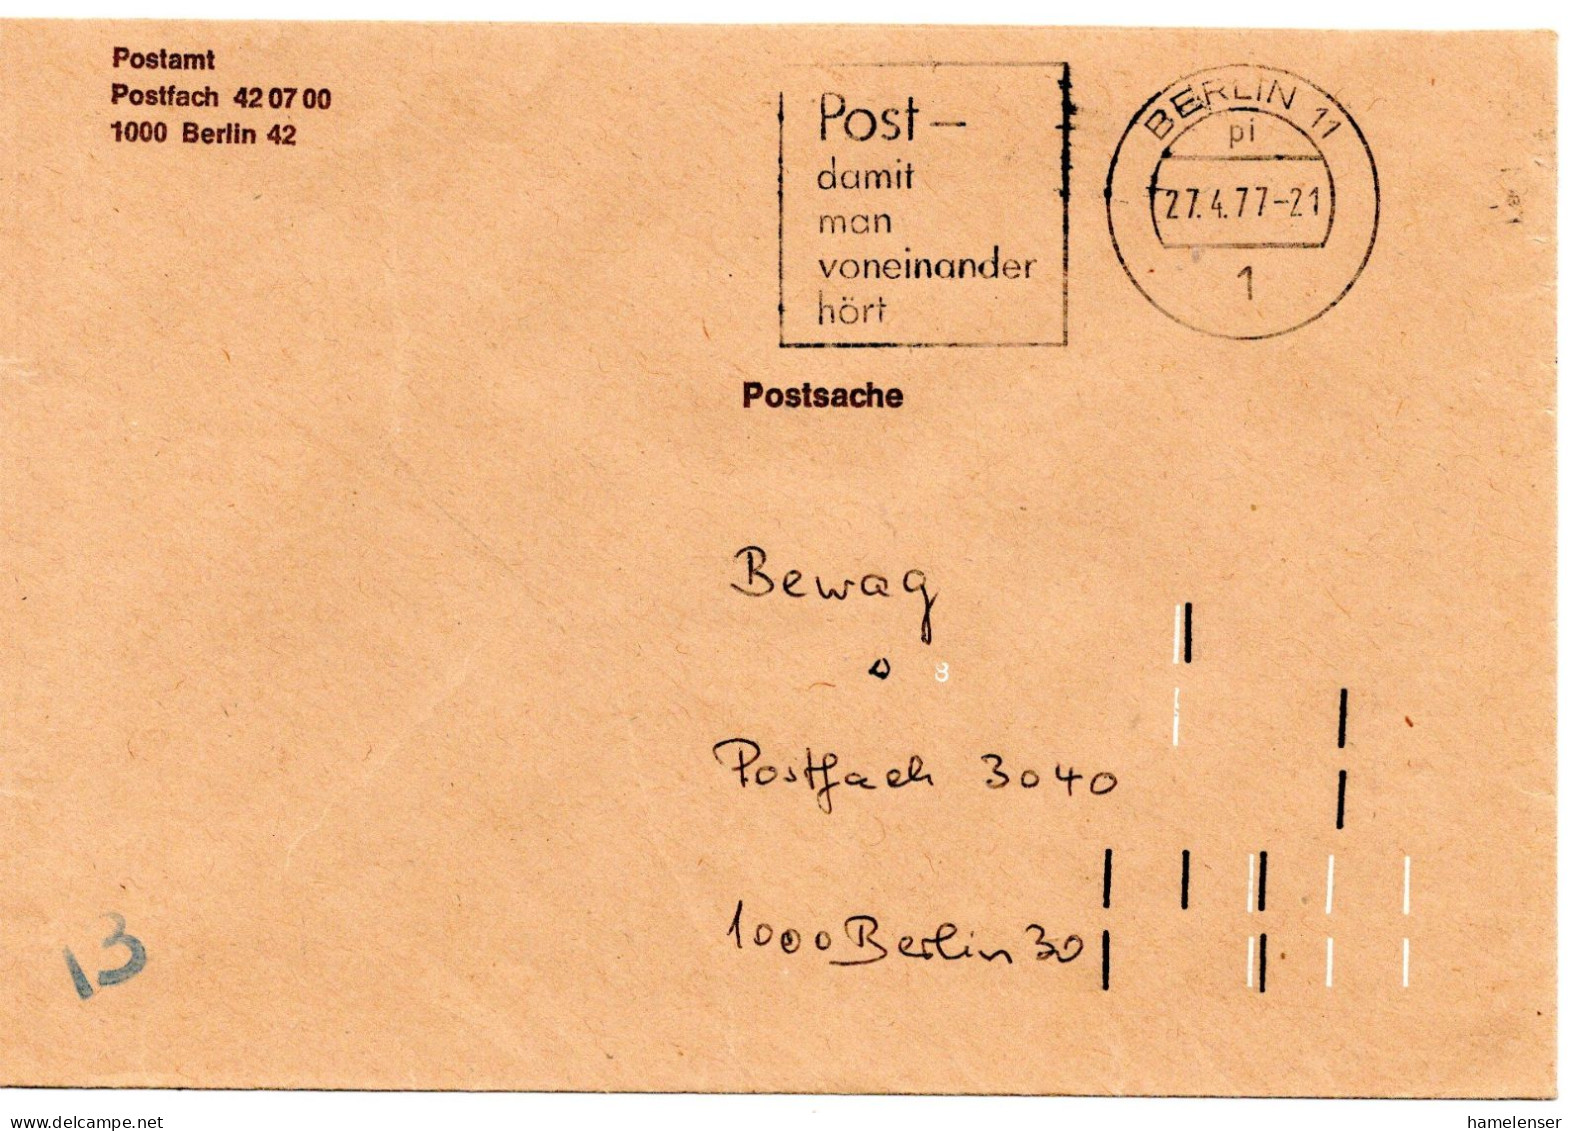 75864 - Berlin - 1977 - Postsache-OrtsBf BERLIN - ..., M Doppel-Codierung - Briefe U. Dokumente